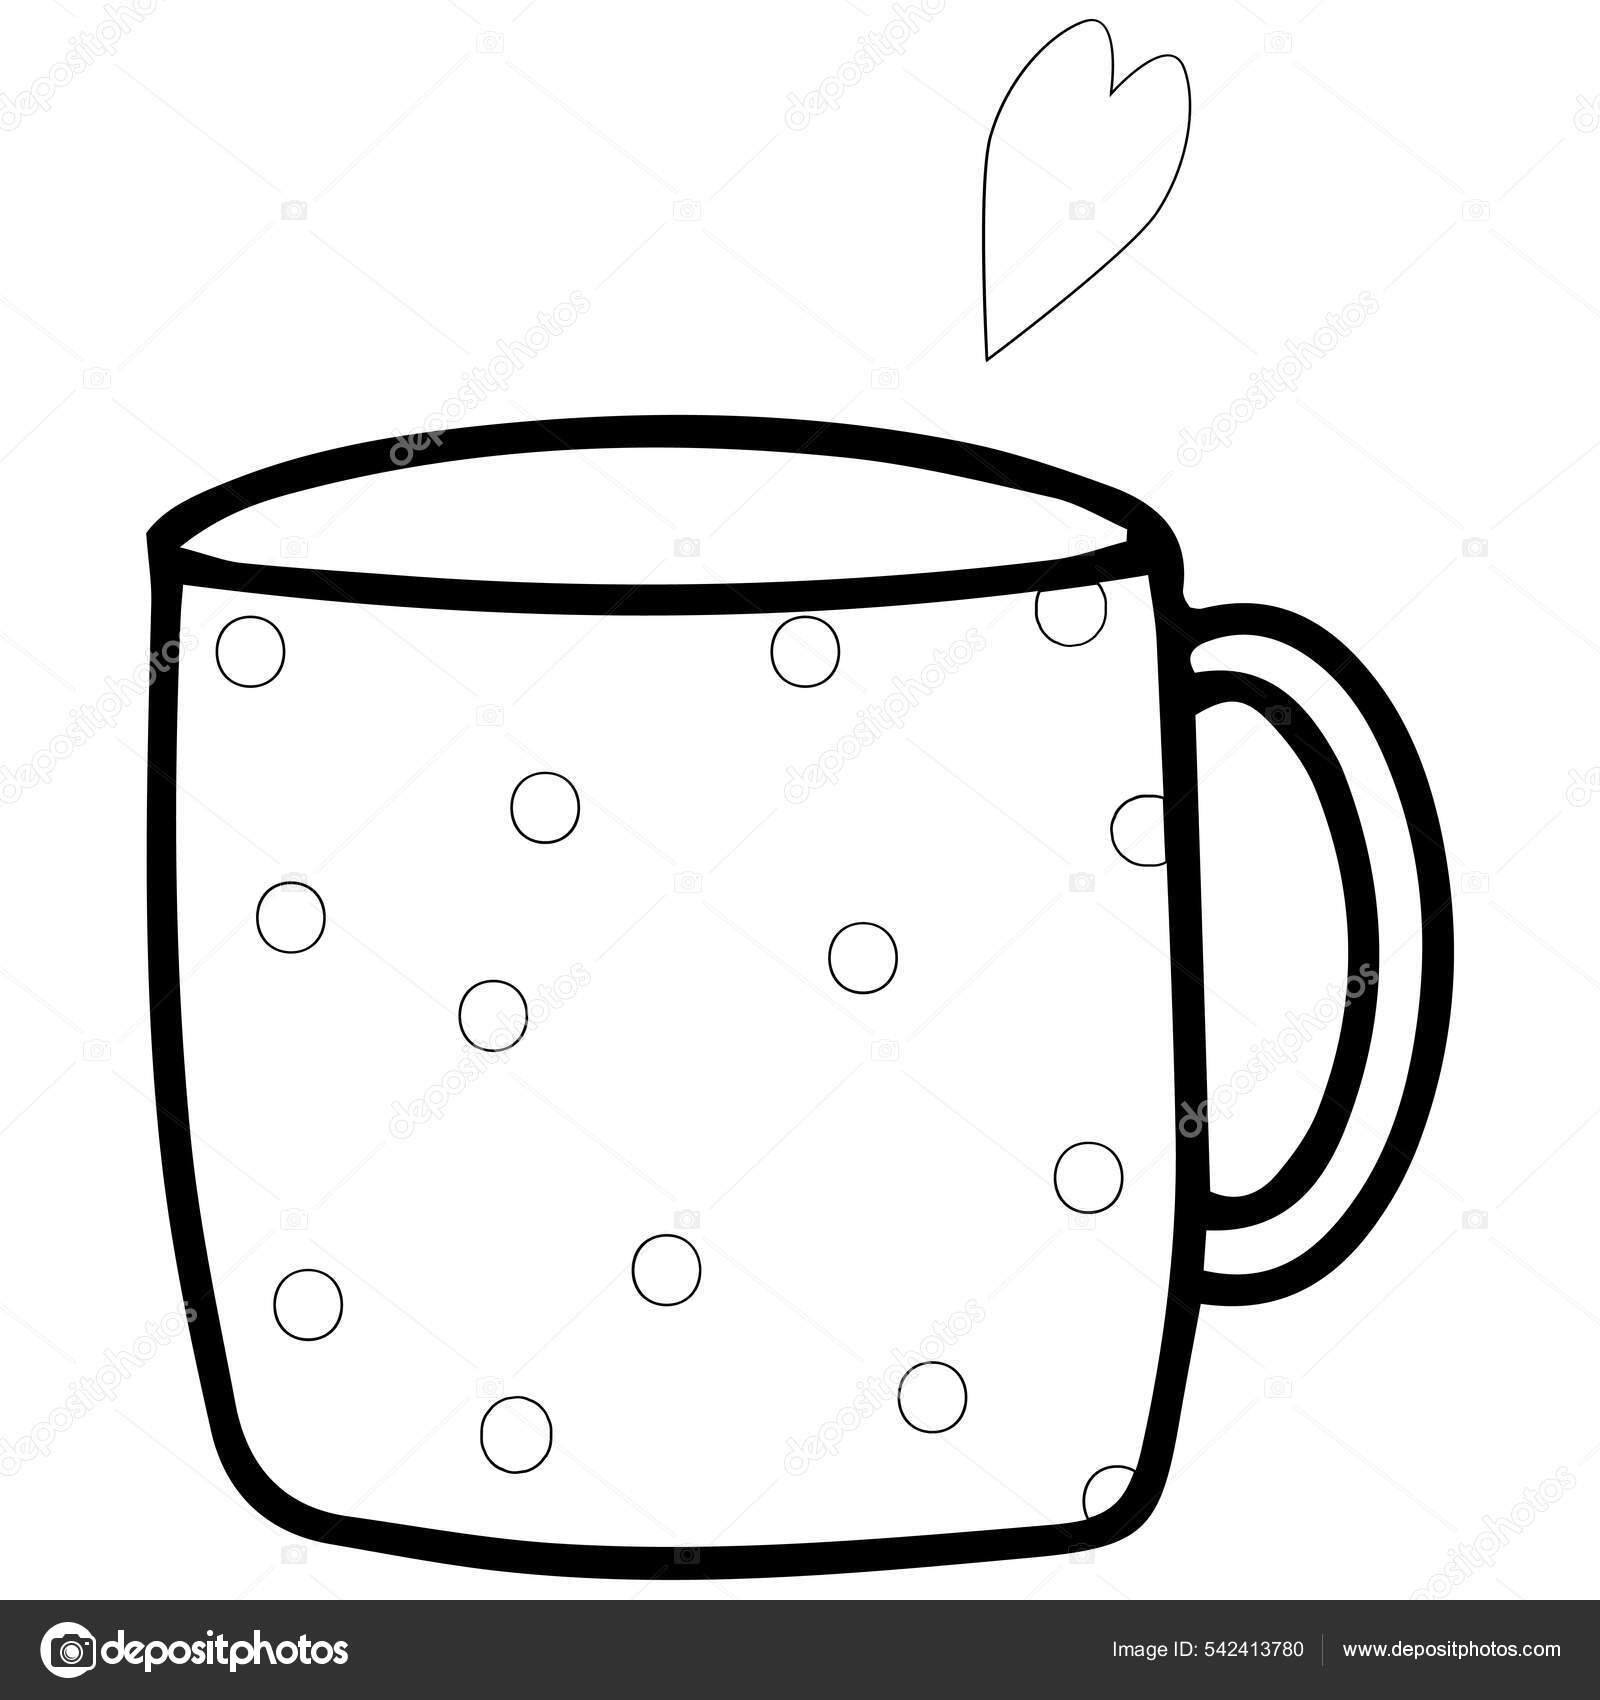 Coffee Mug Sketch by KirbyTron5919 on DeviantArt